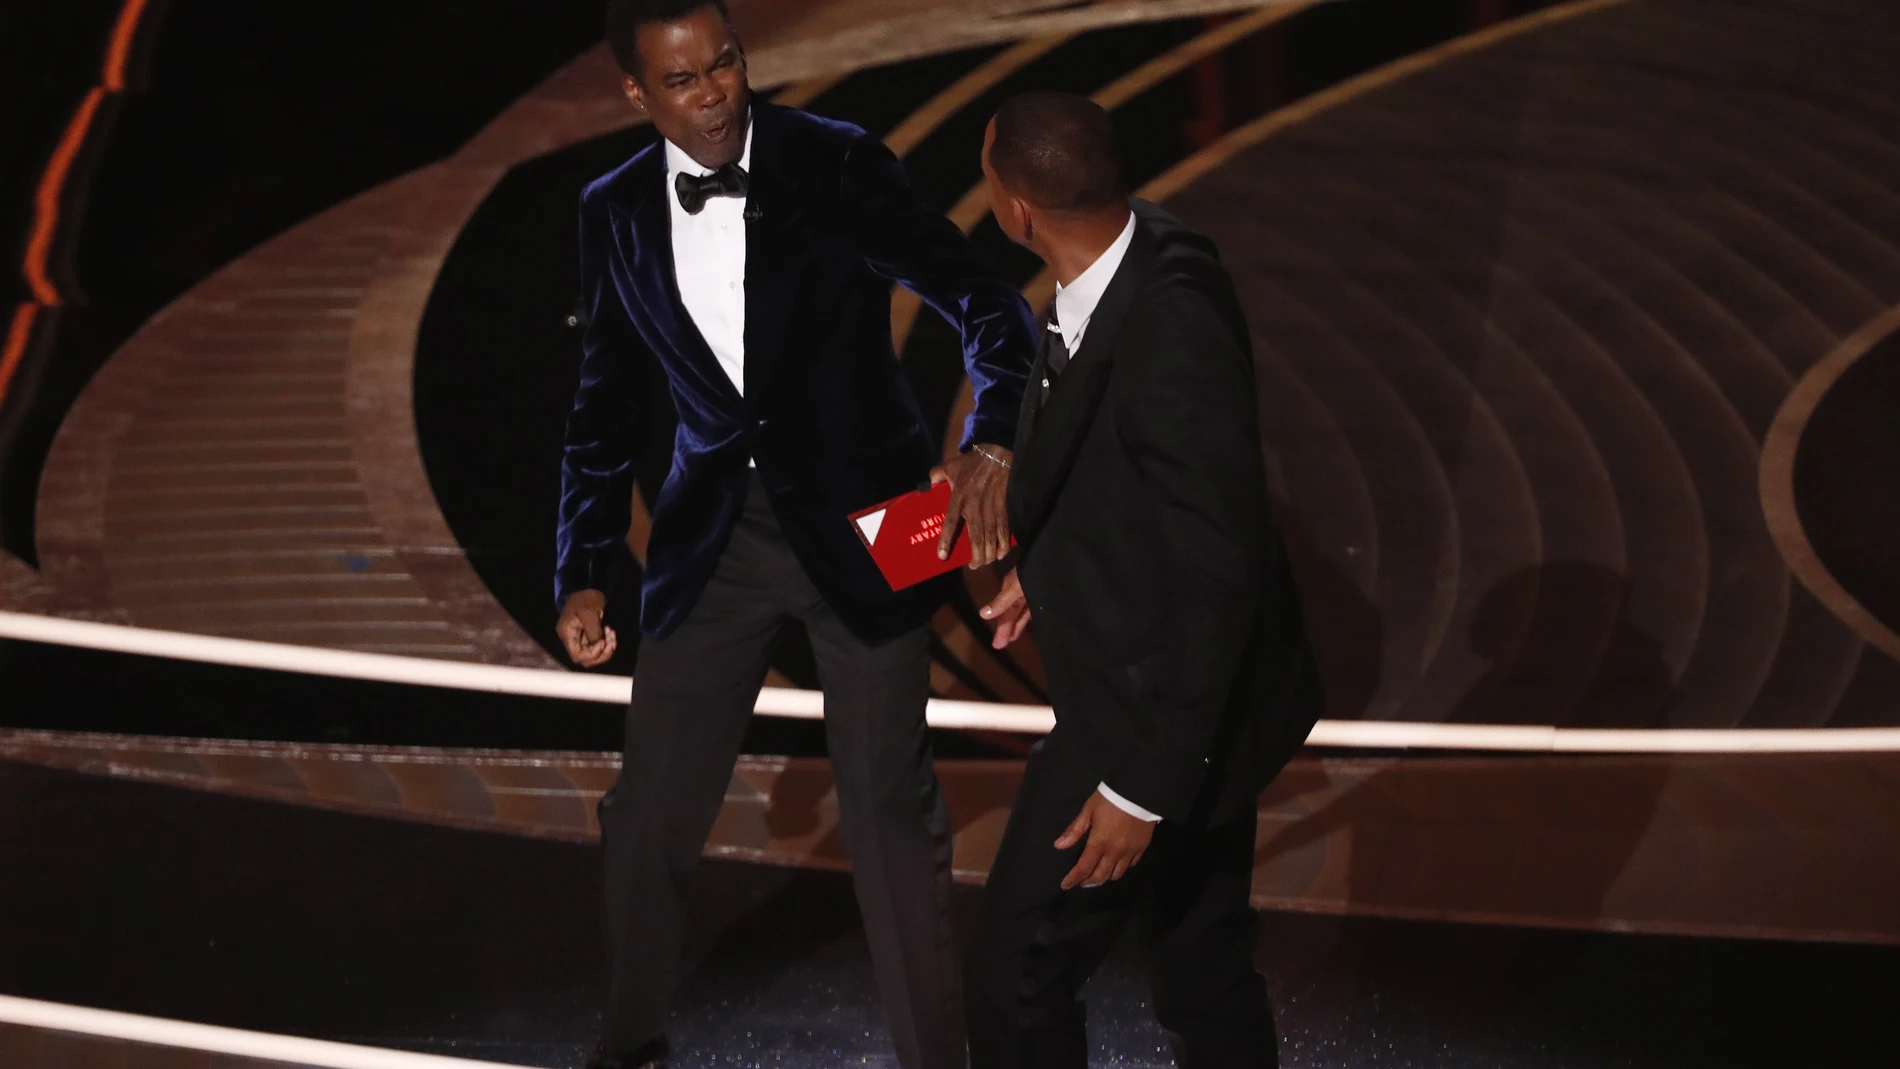 Las reacciones de los asistentes al bofetón de Will Smith a Chris Rock en la gala de los Óscar 2022